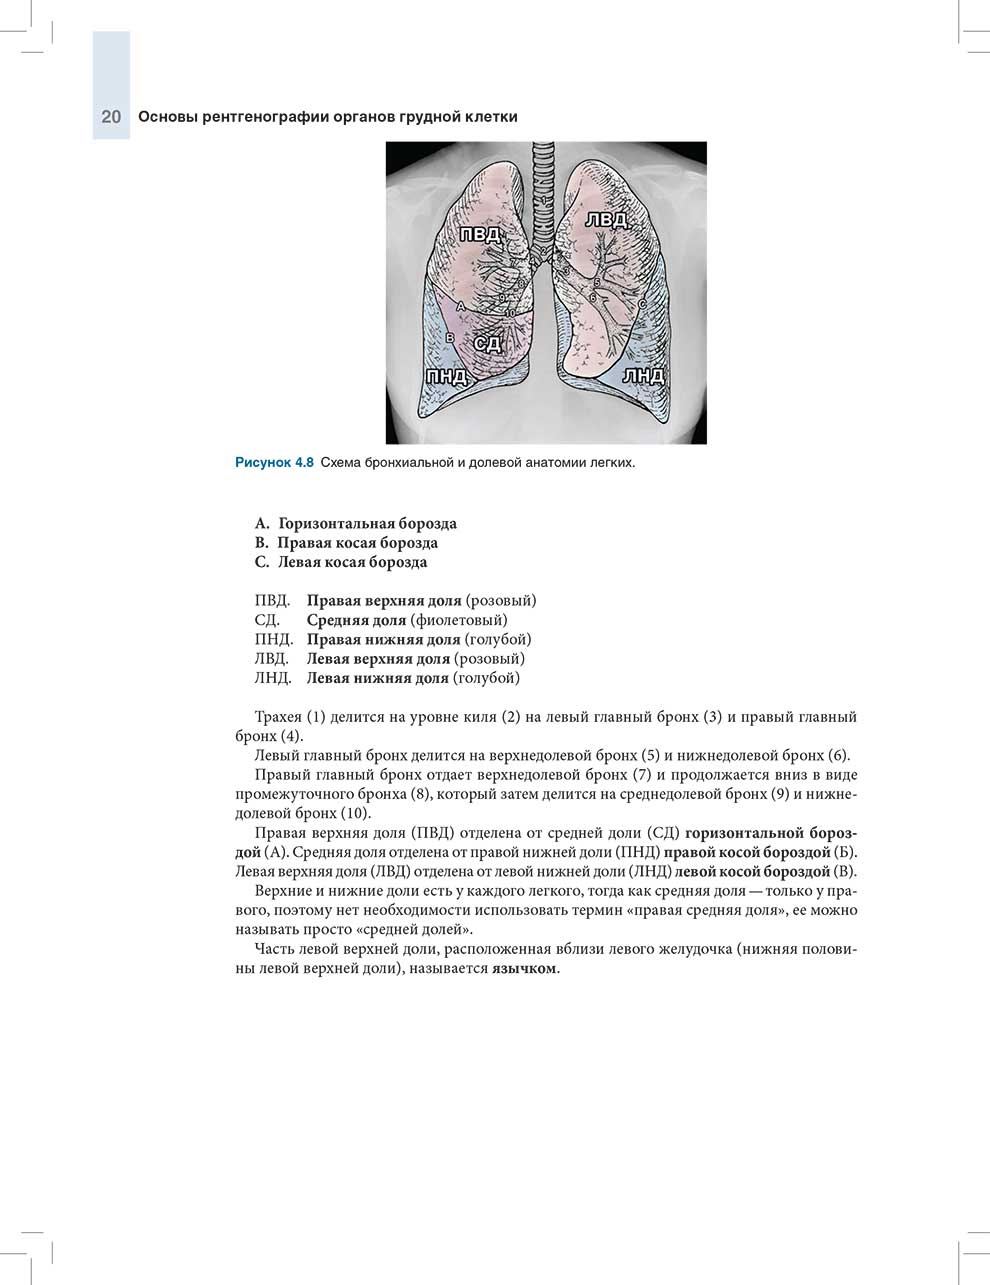 Схема бронхиальной и долевой анатомии легких